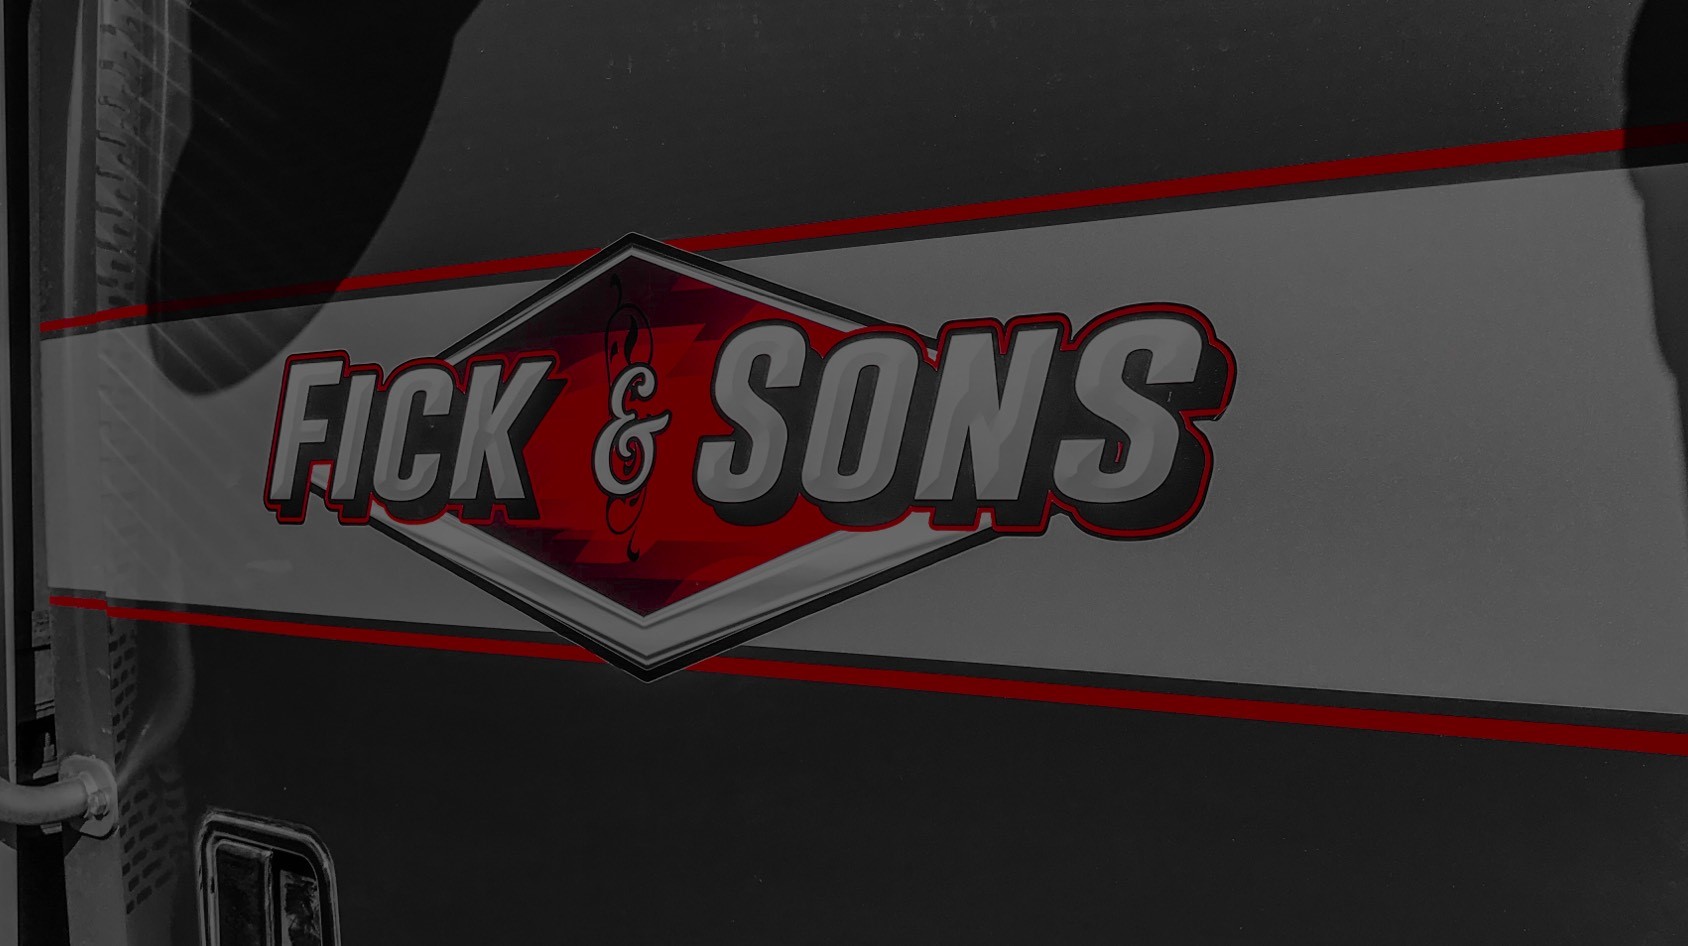 Fick & Sons Blackout